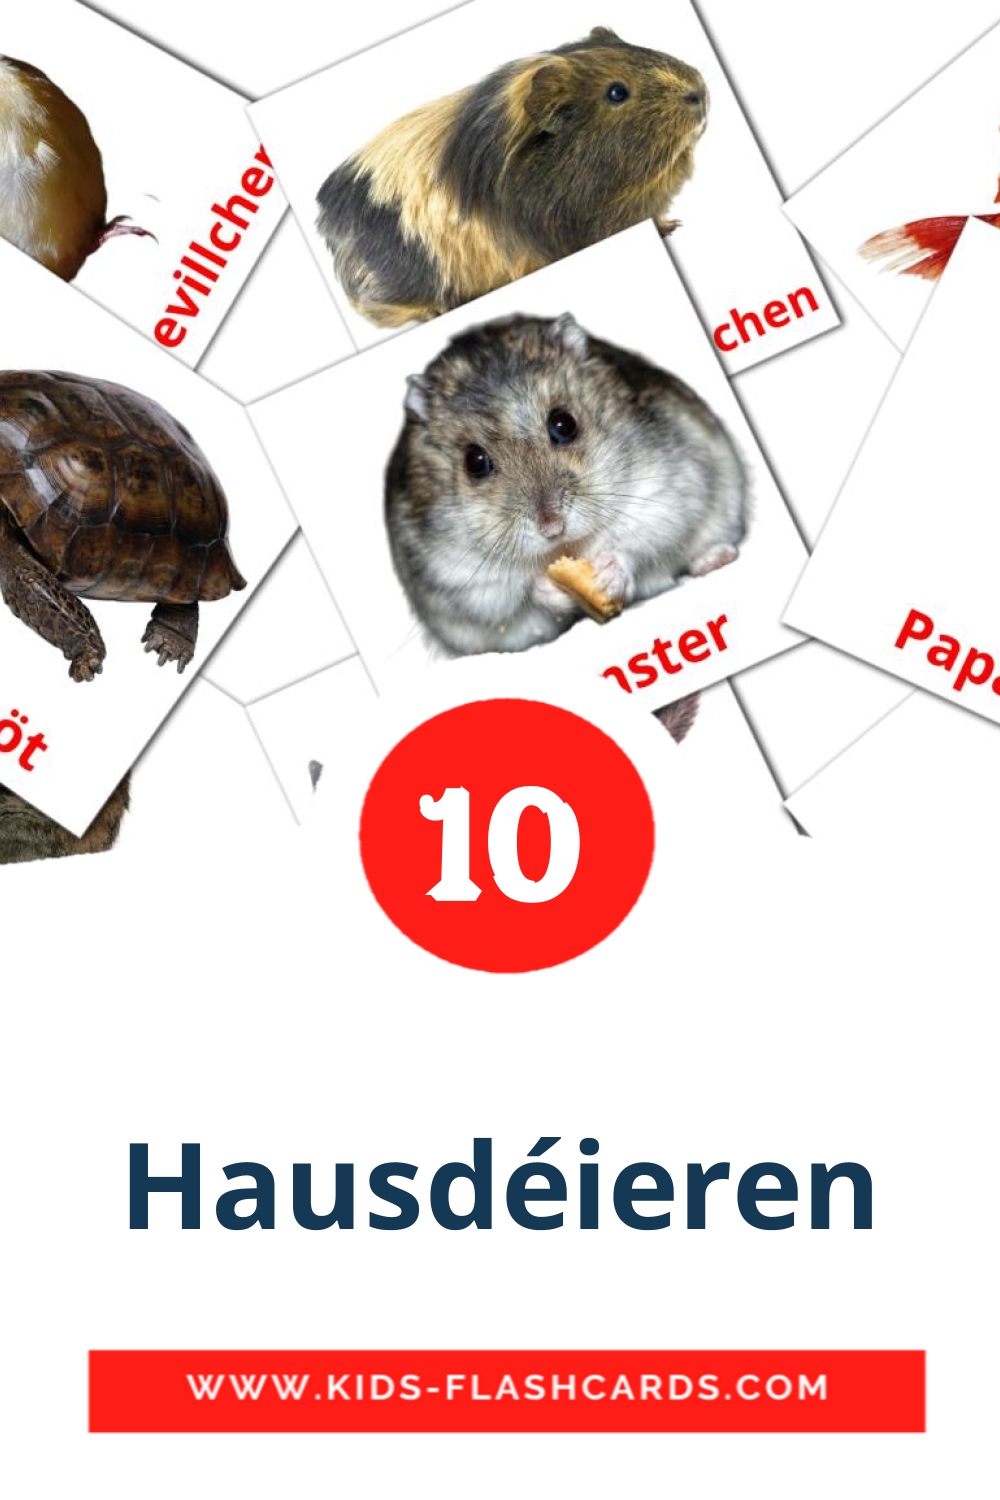 Hausdéieren на люксембургском для Детского Сада (10 карточек)